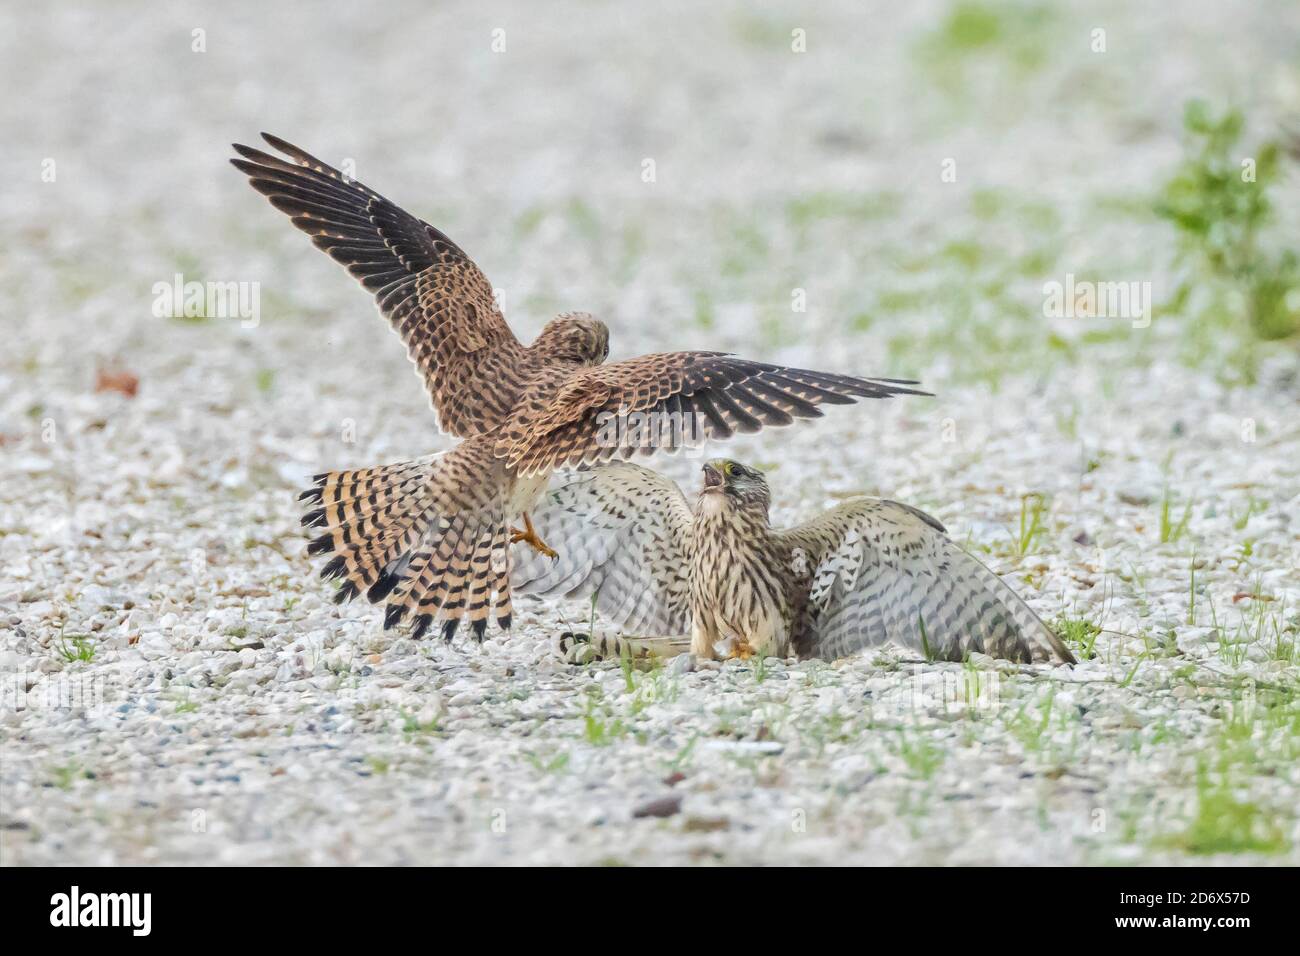 Deux femelles communes de Kestrels, falco tinnunculus, oiseau de proie luttant sur le sol, montrant la domination sur le territoire Banque D'Images